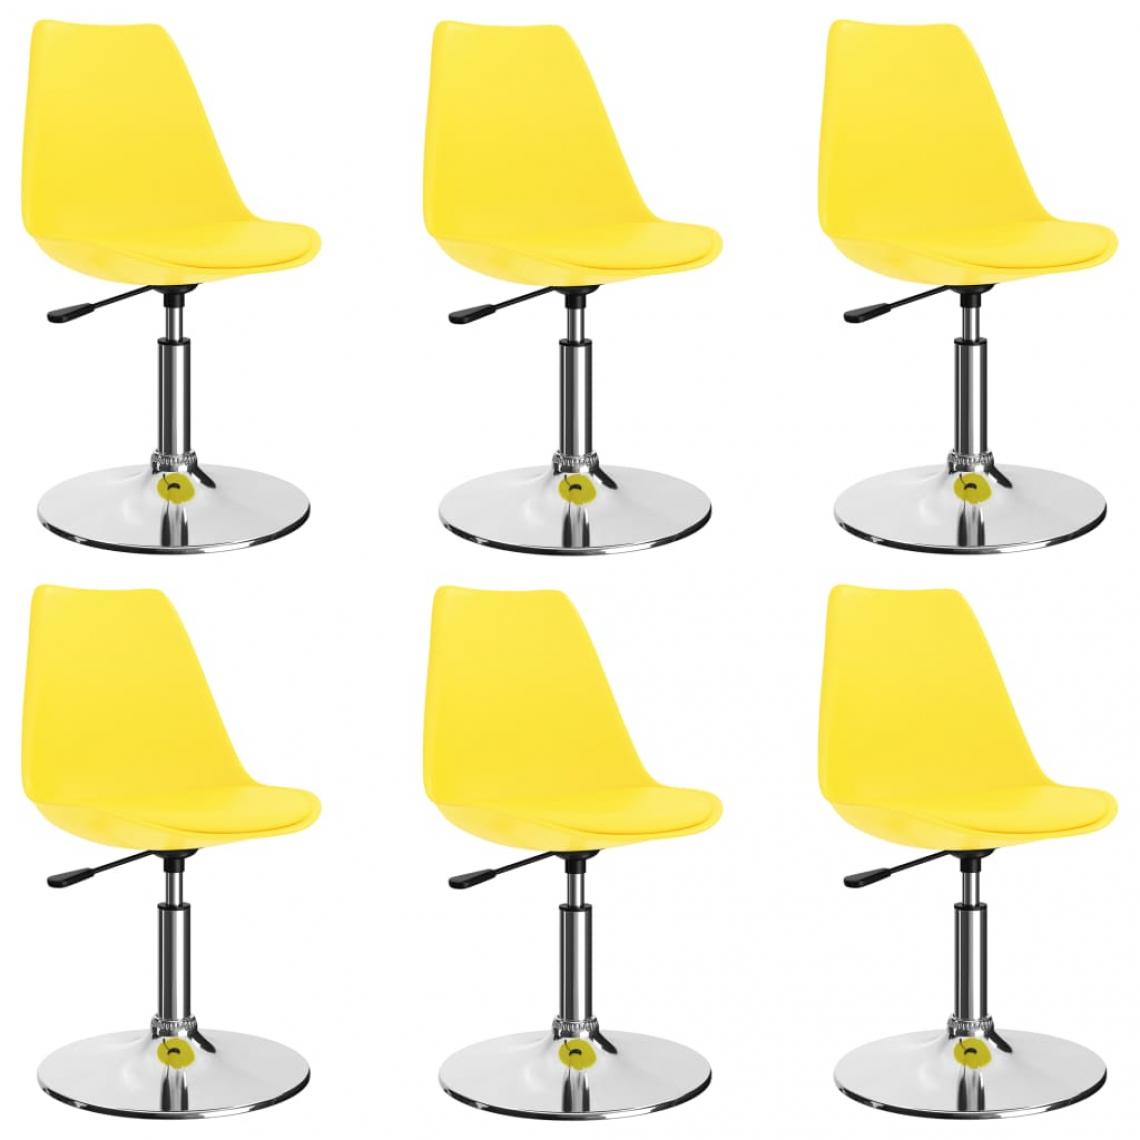 Decoshop26 - Lot de 6 chaises de salle à manger cuisine pivotantes design moderne similicuir jaune CDS022757 - Chaises